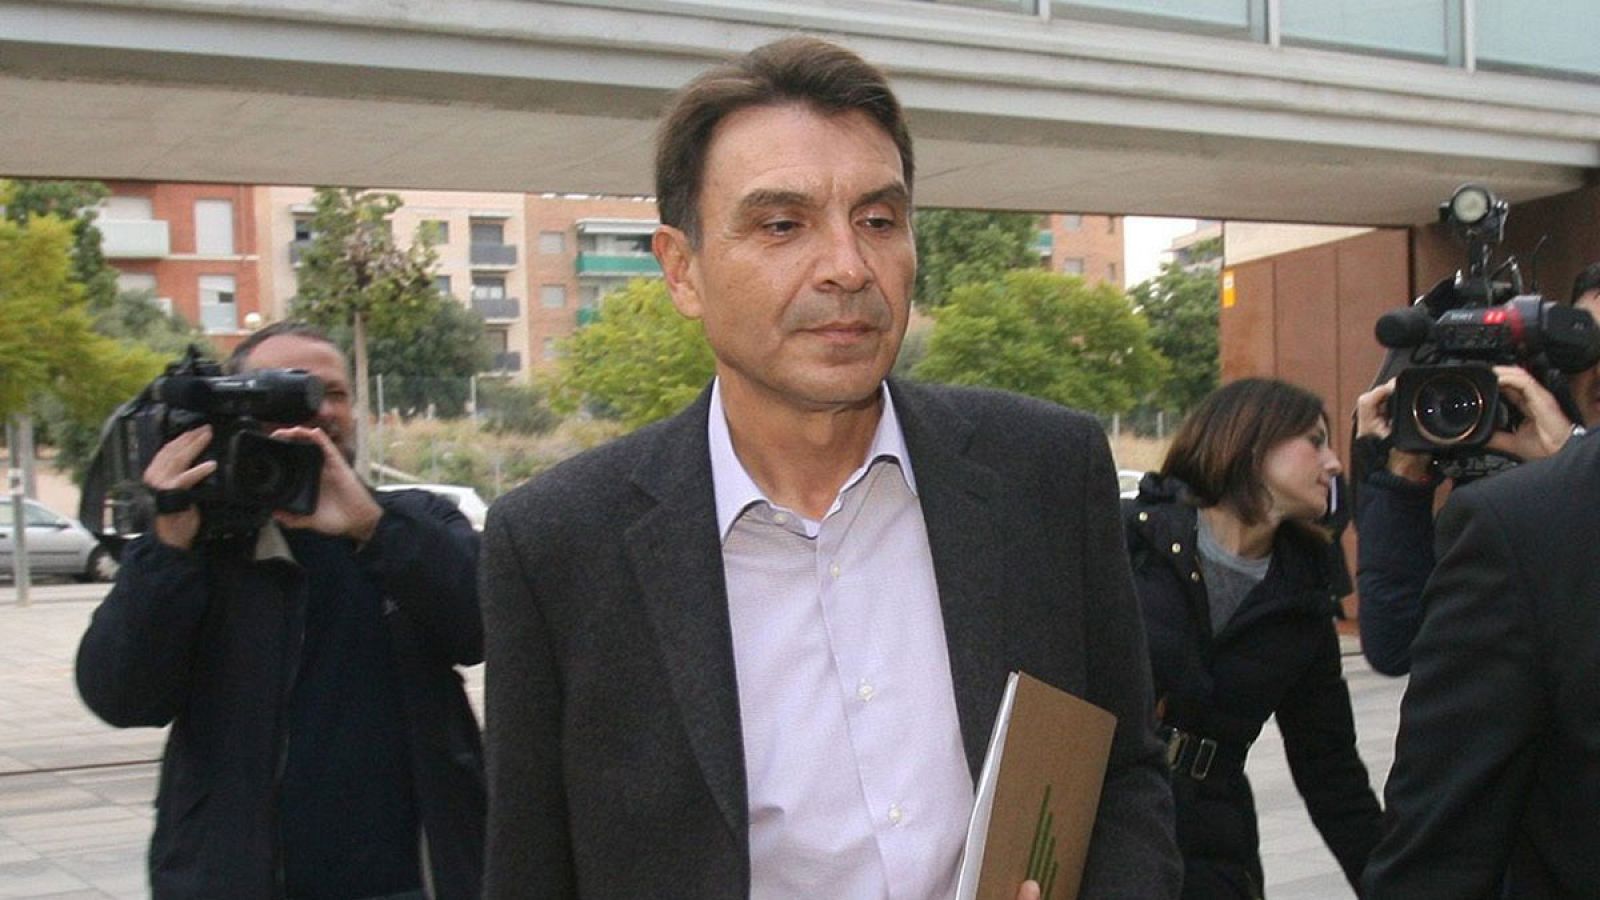 El exdirector de obra pública catalana, Josep Antoni Rosell, llega a los juzgados de El Vendrell